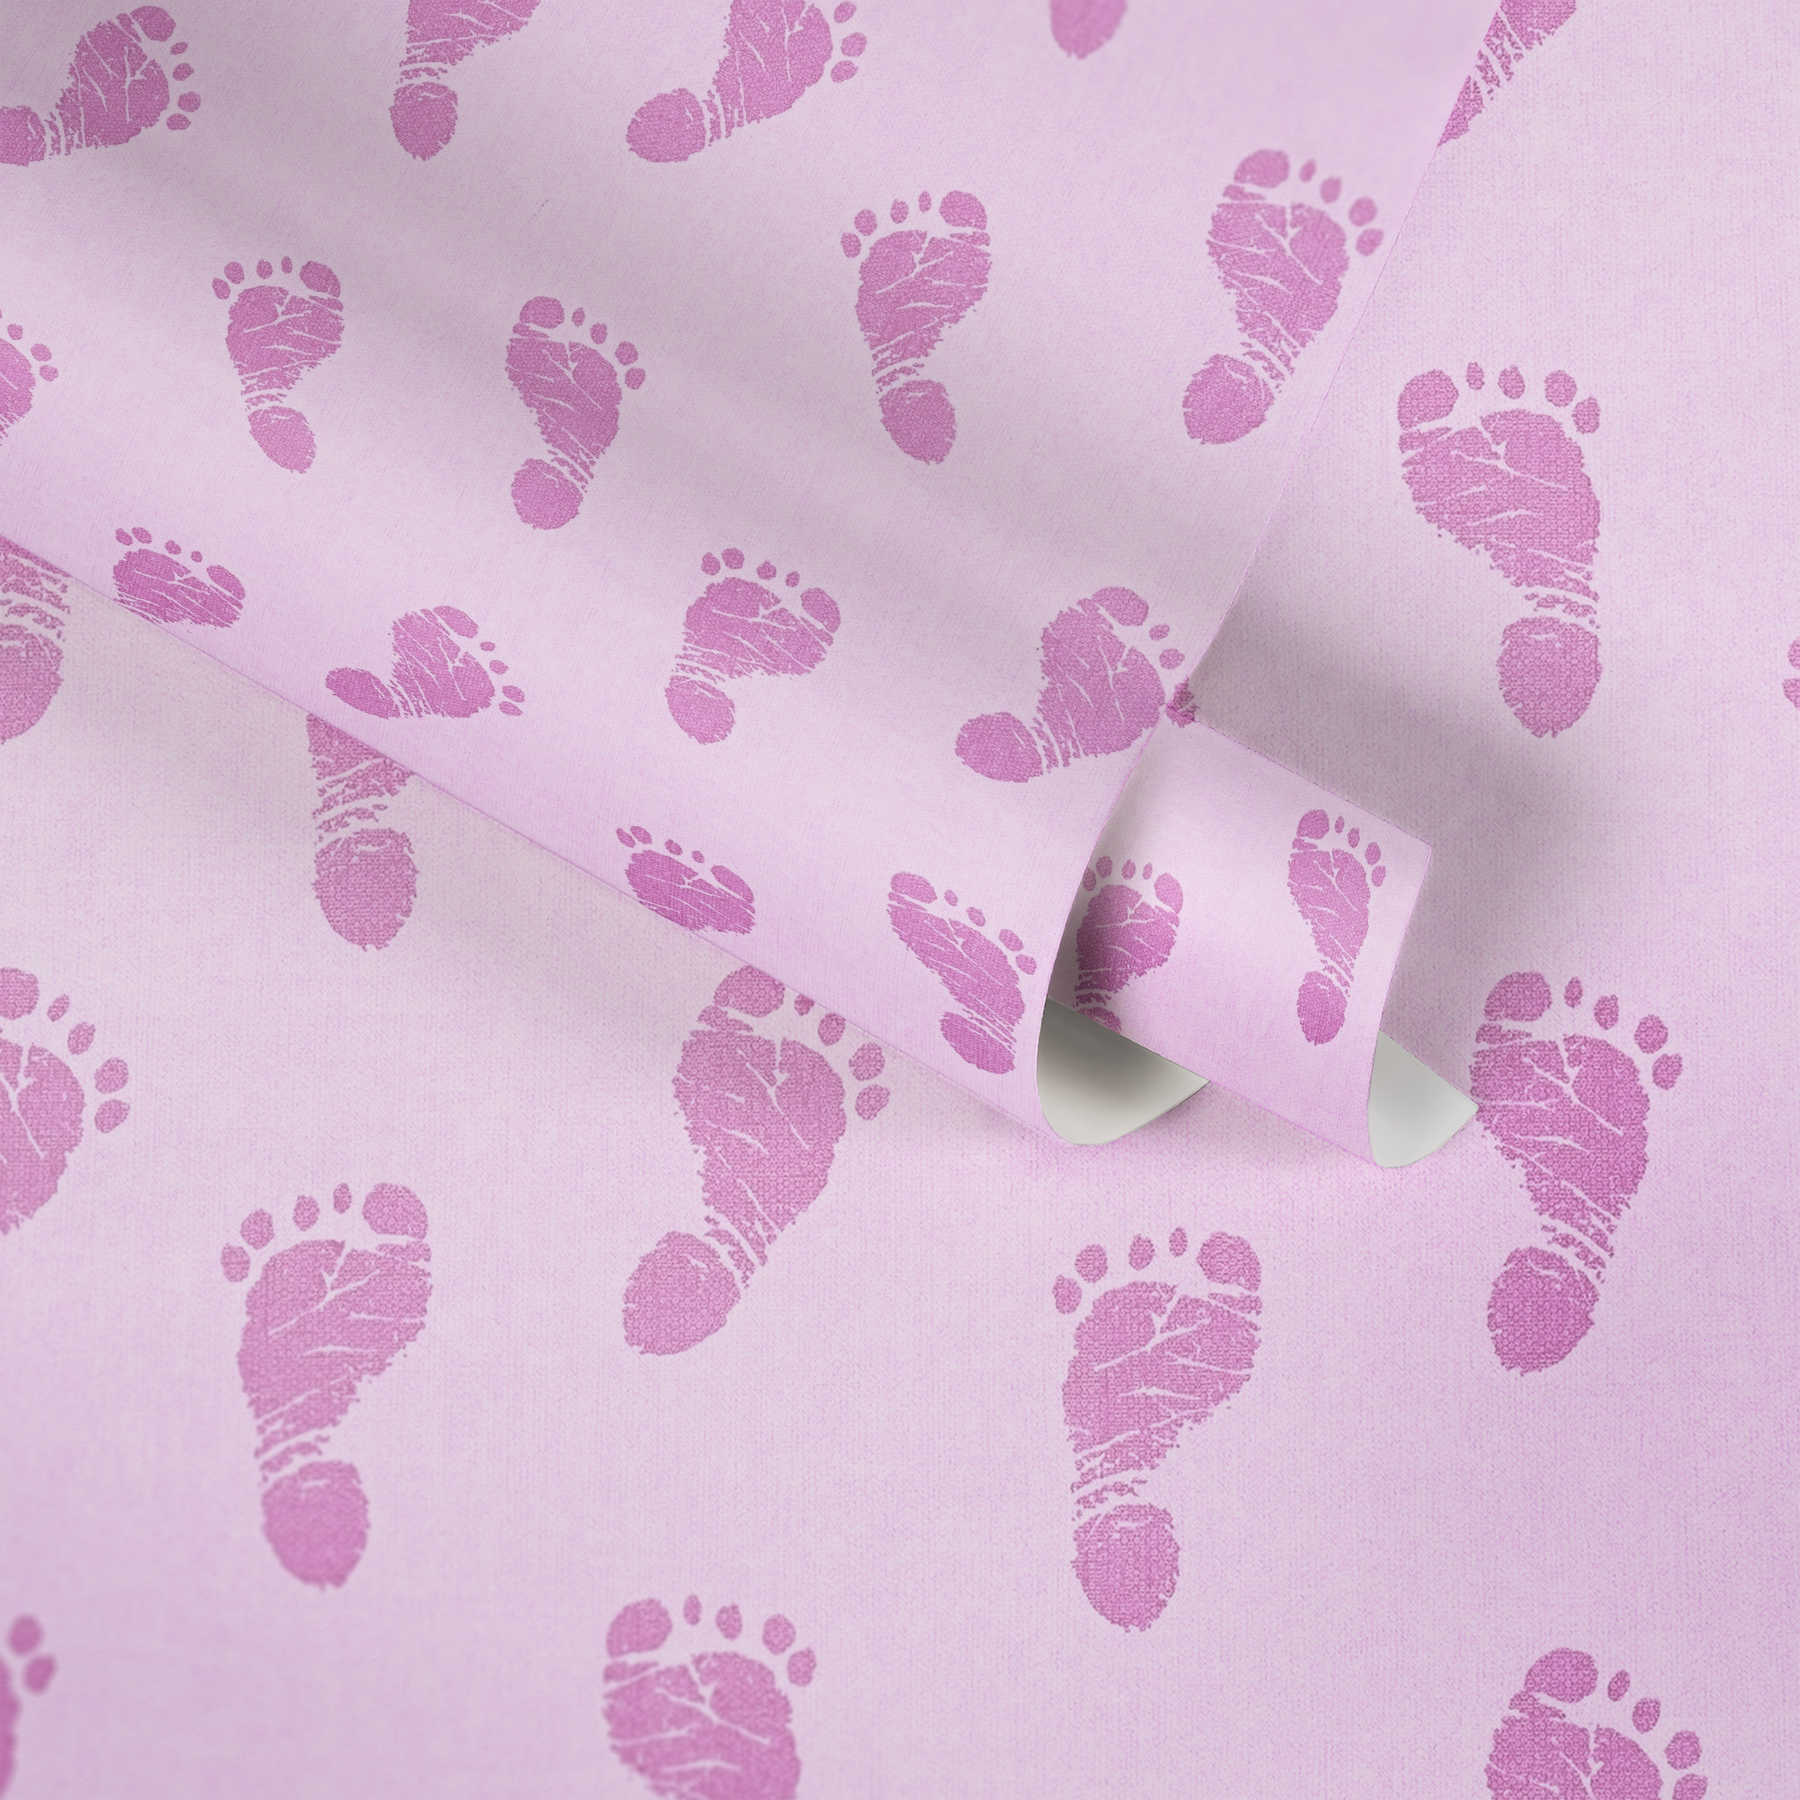             Kinderkamer behang baby ontwerp voor meisjes - roze
        